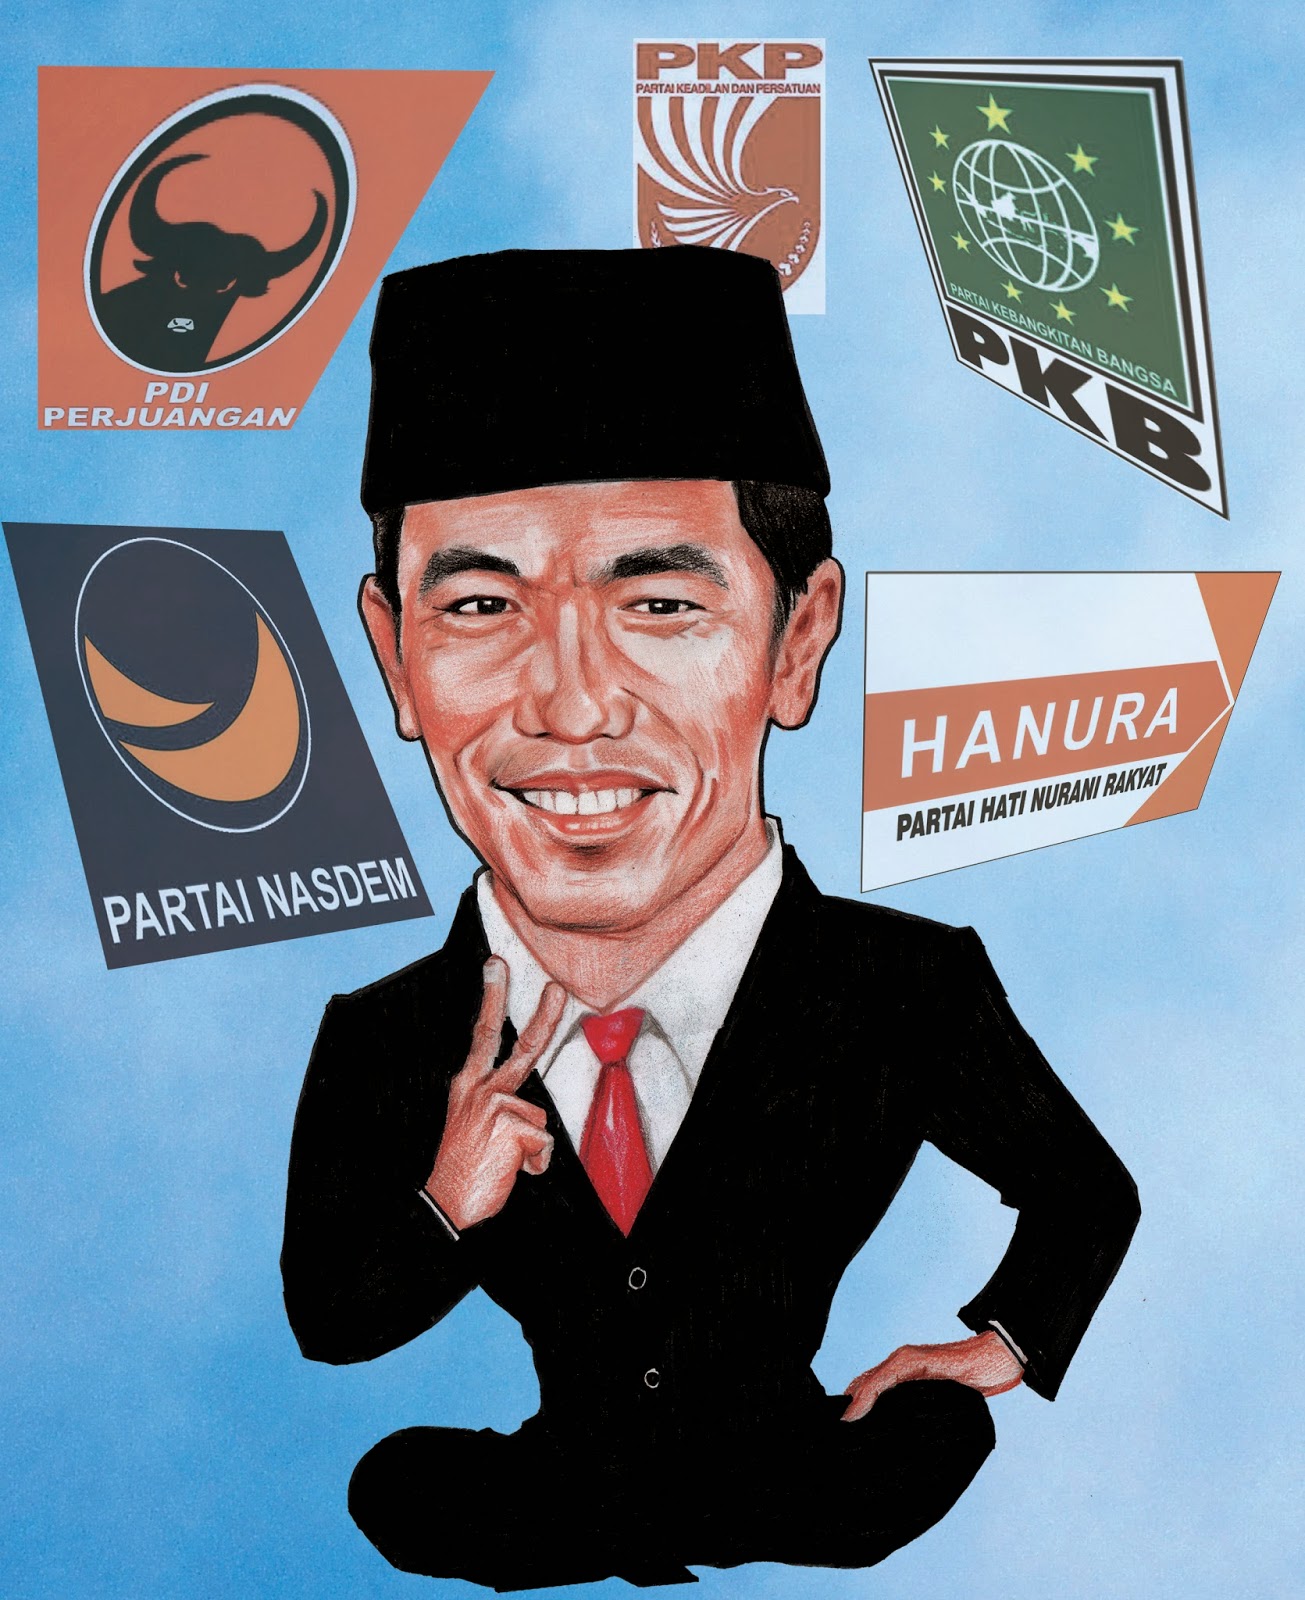 Jasa Bikin Foto Karikatur Unik Manado Jokowi Koalisi Permanen Gambar